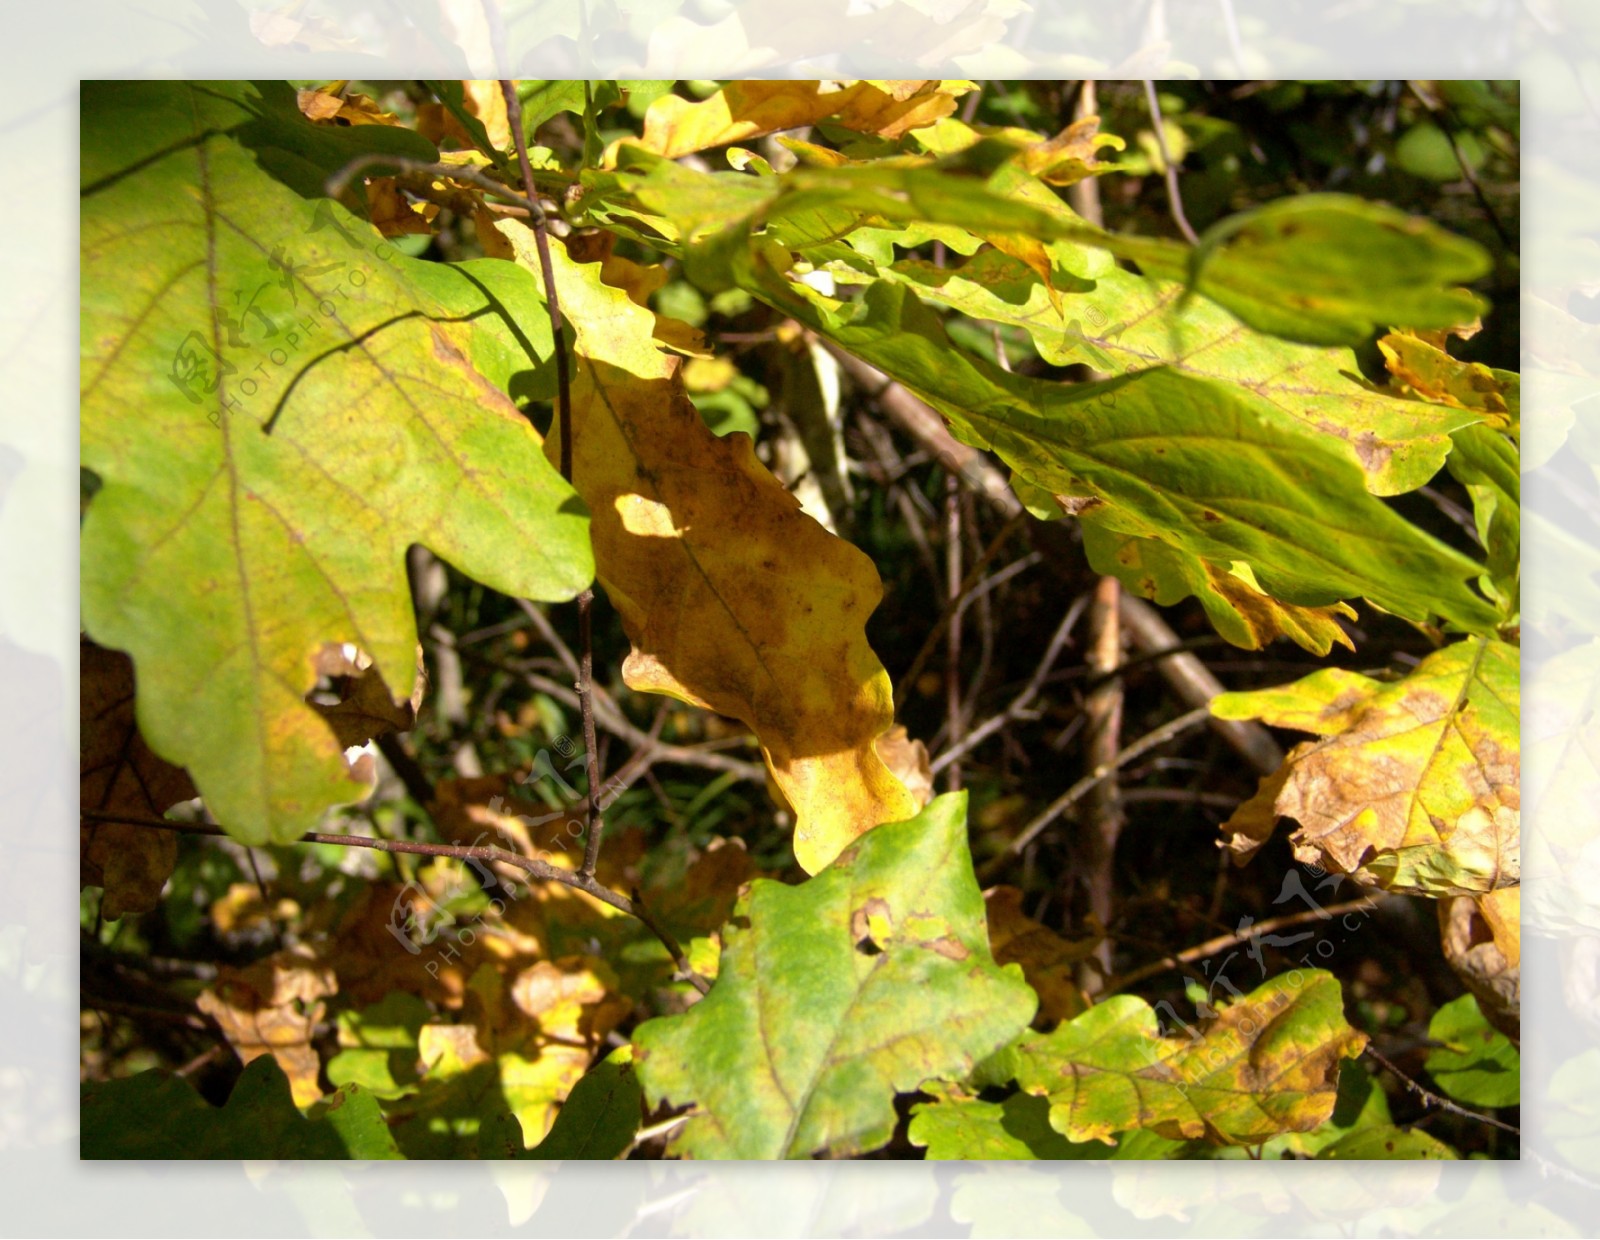 秋天树叶摄影